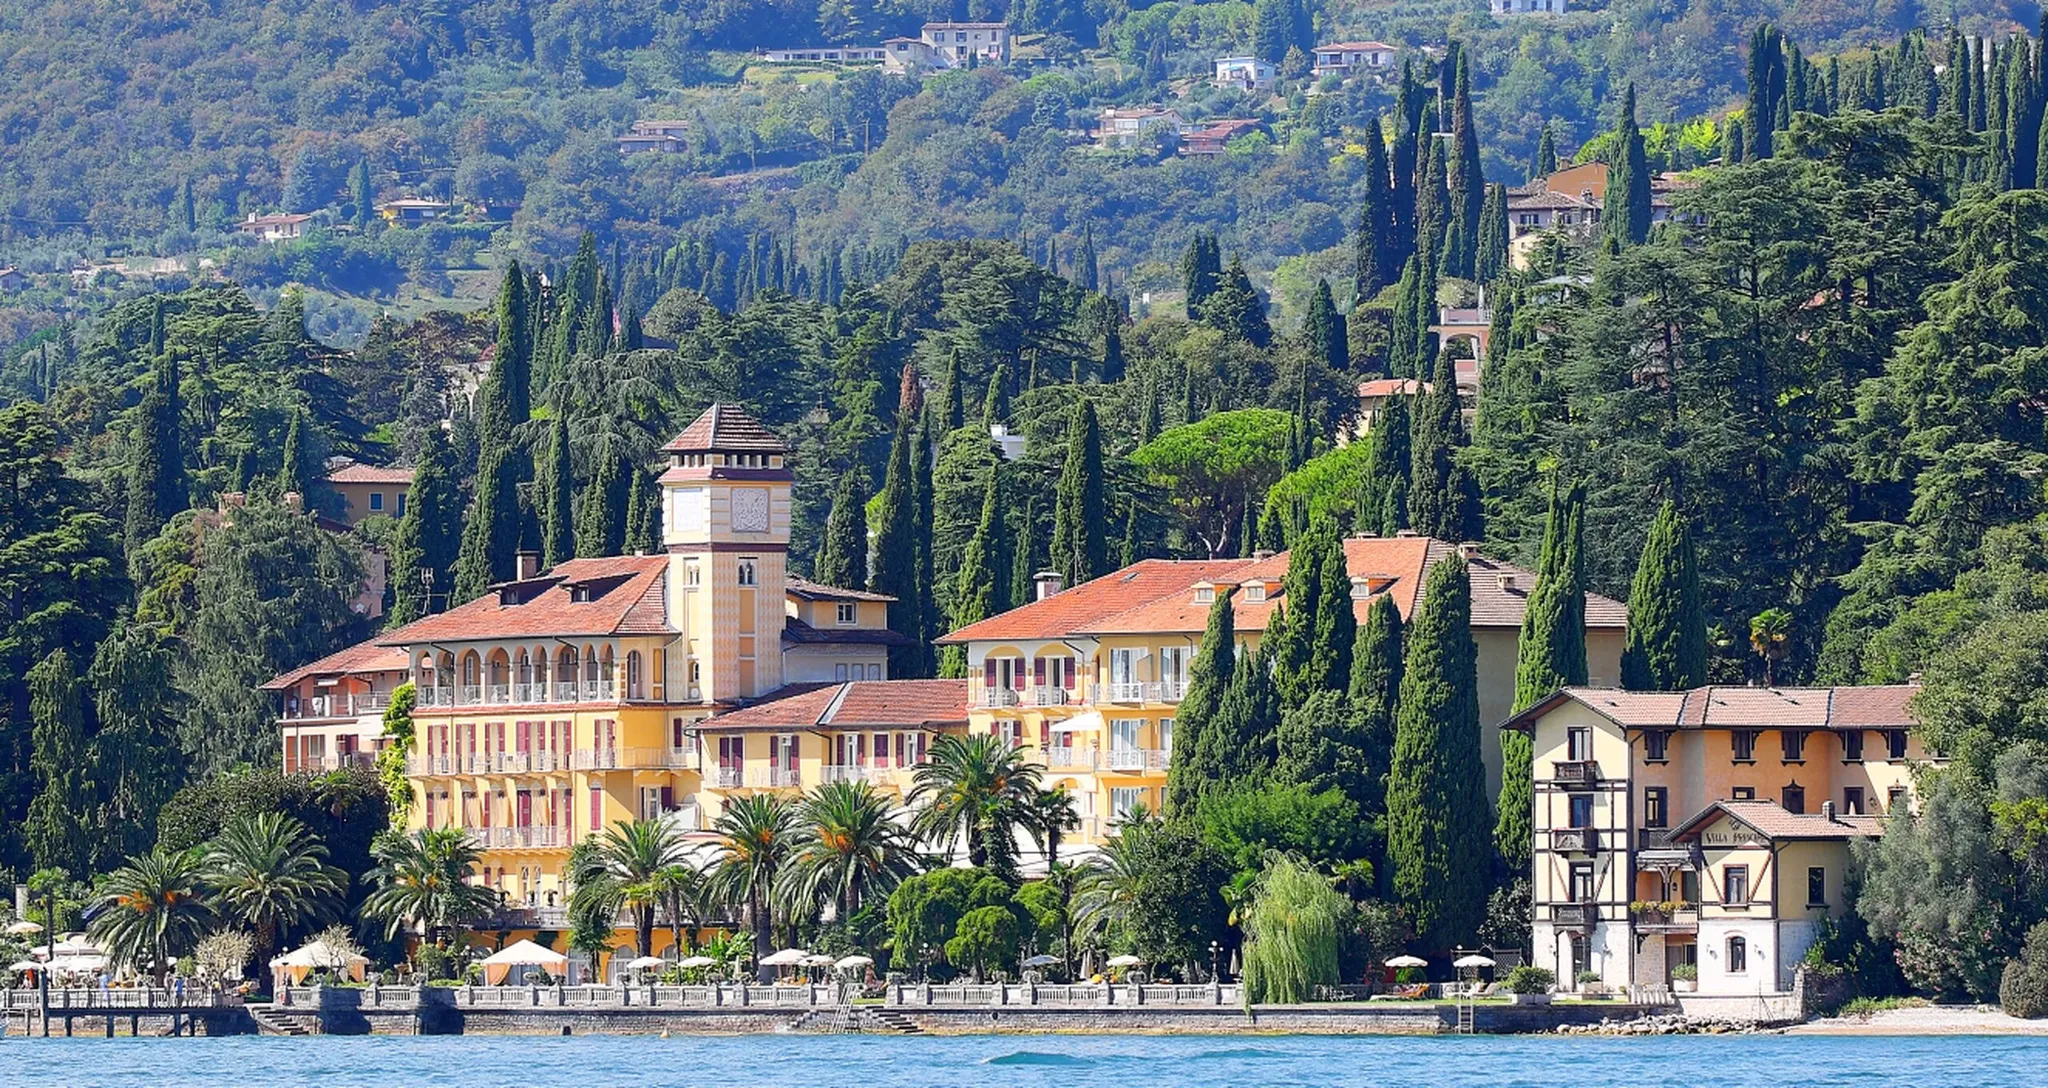 Gardone Riviera | Lombardy Region, Italy - Rated 4.7